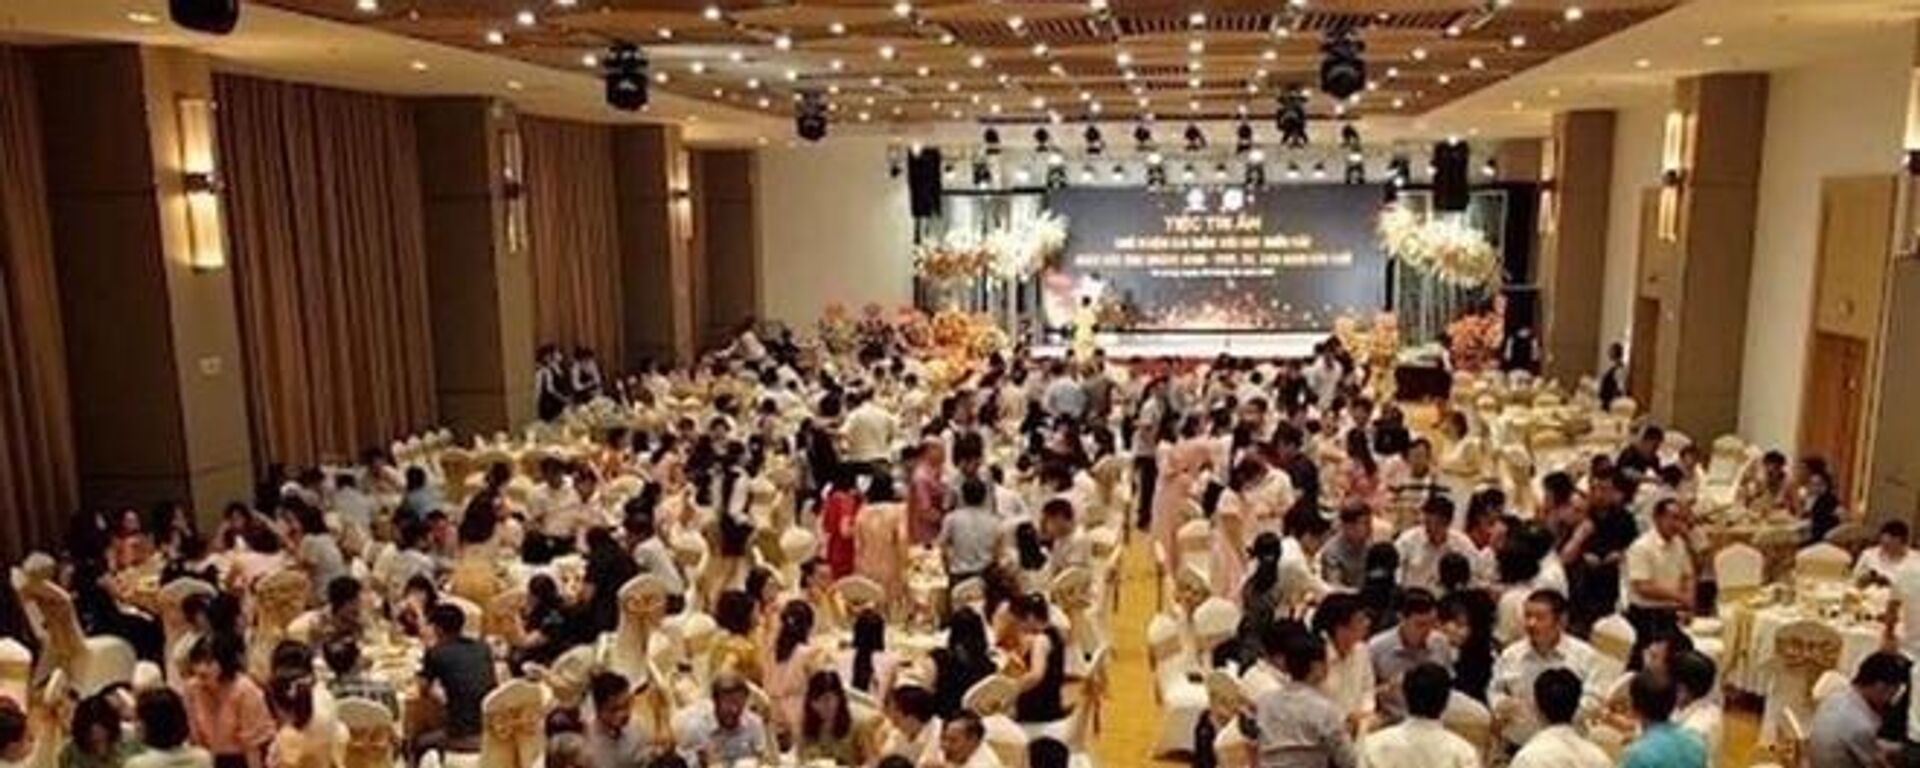 Bữa tiệc chia tay được tổ chức sang trọng với hàng trăm người tham gia. - Sputnik Việt Nam, 1920, 08.08.2022